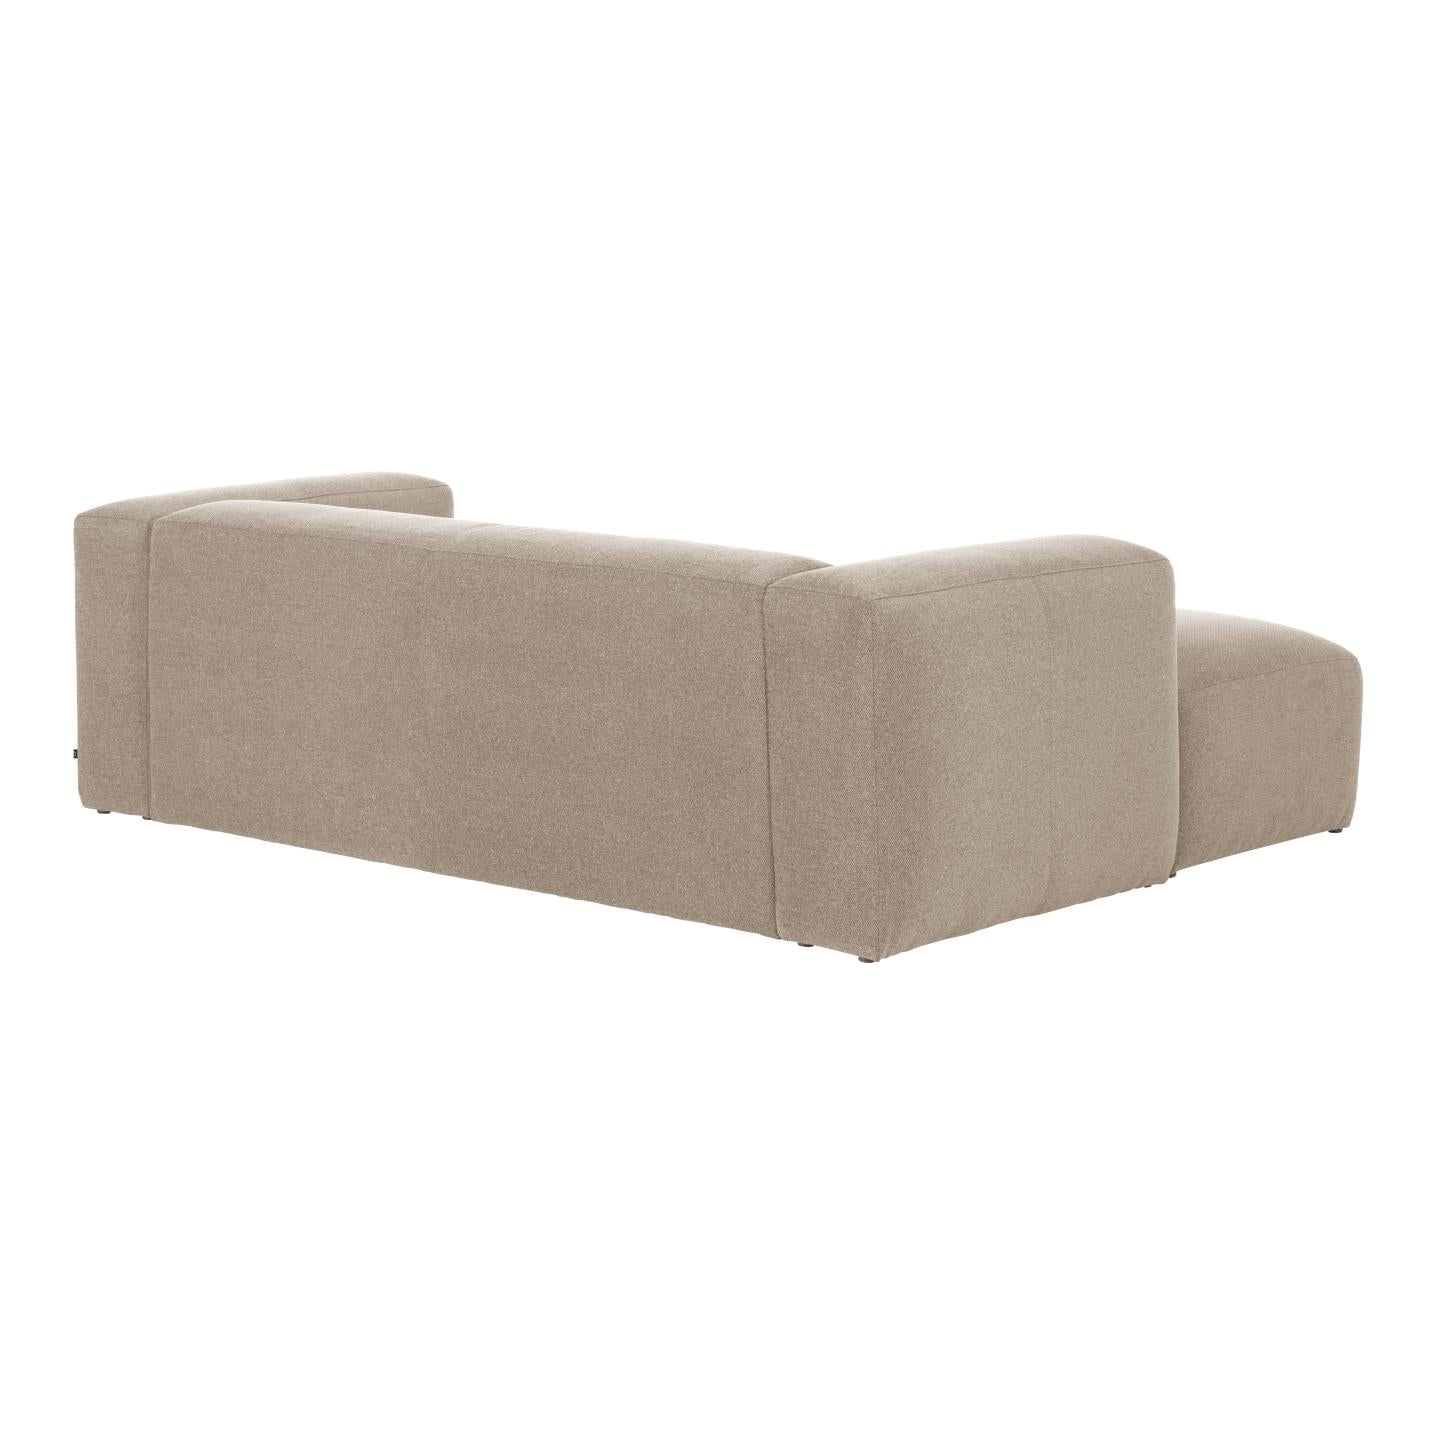 Blok 2 személyes kanapé bézs színben, 240 cm, bal oldali fekvőfotellel